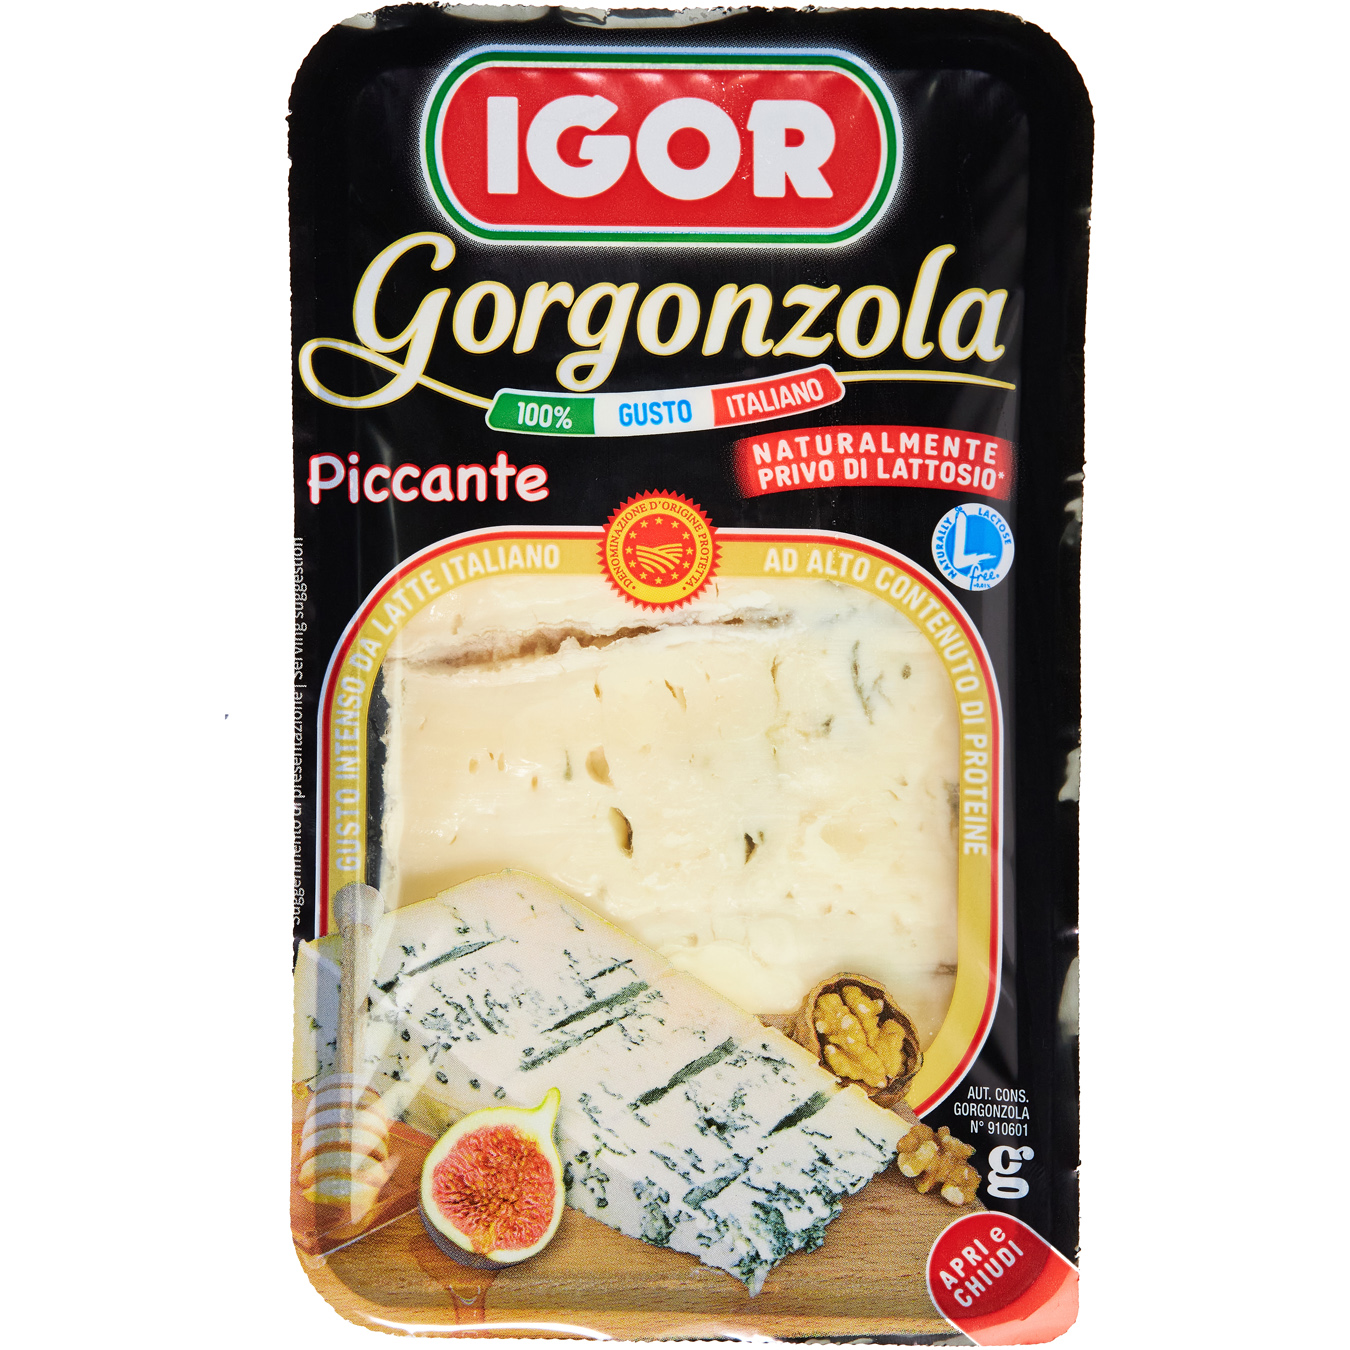 Igor gorgonzola picante soft cheese with blue mold 48% 150g